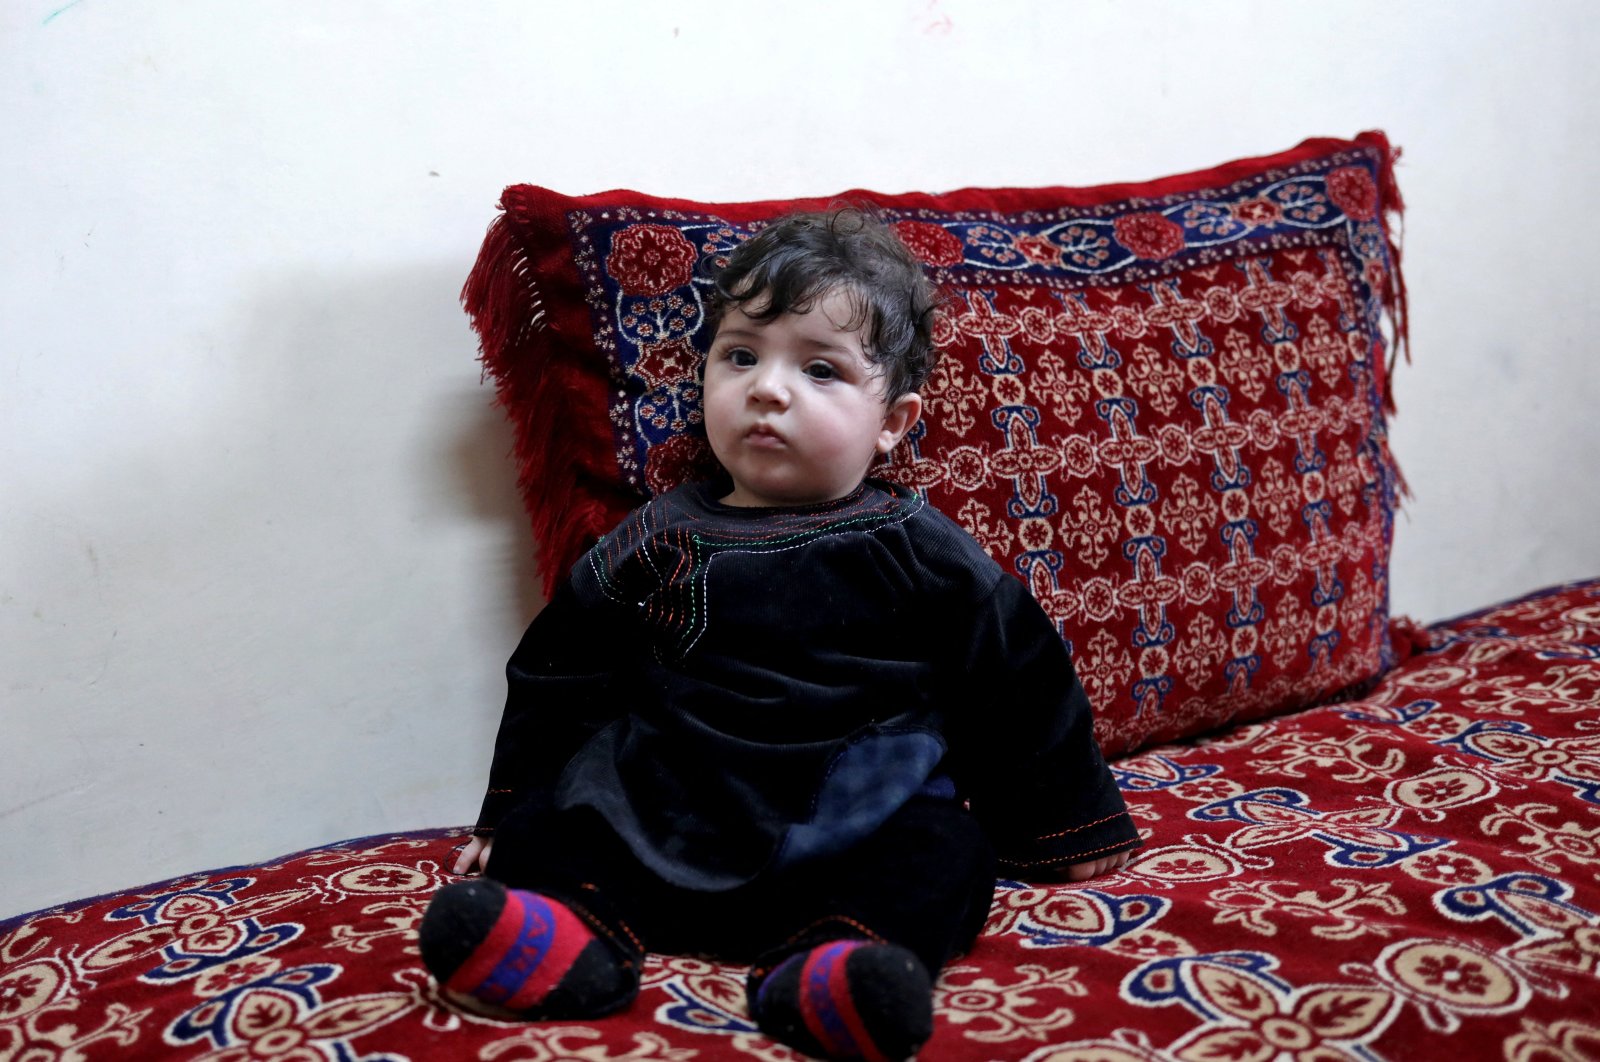 Bayi Afghanistan yang hilang dalam evakuasi bandara yang kacau akhirnya ditemukan